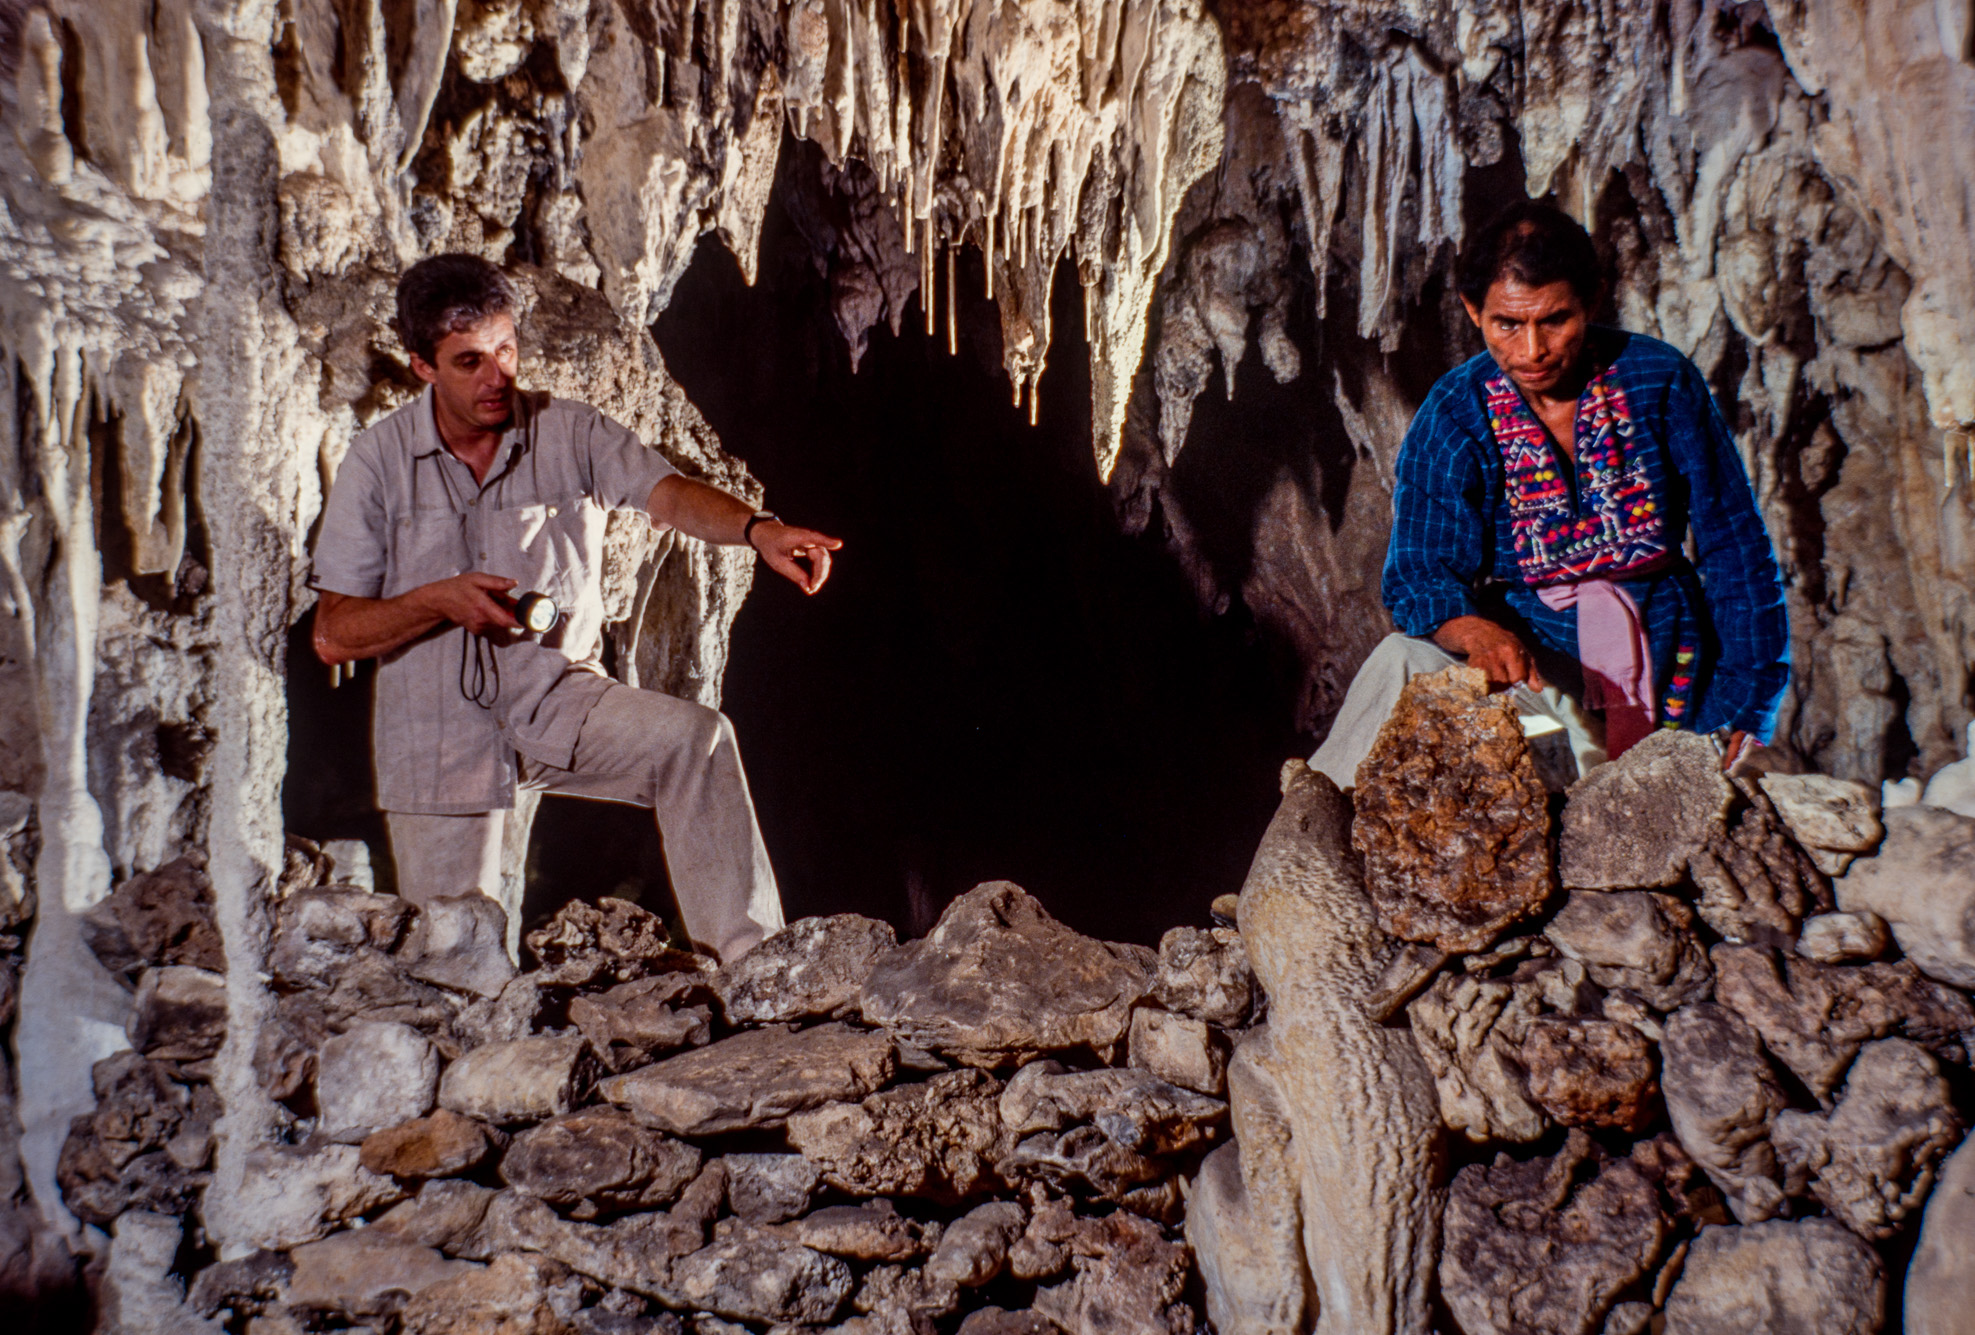 Processions et rituels Mayas dans la région de la Candelaria.Découverte d'un mur protégeant une grotte secrète.